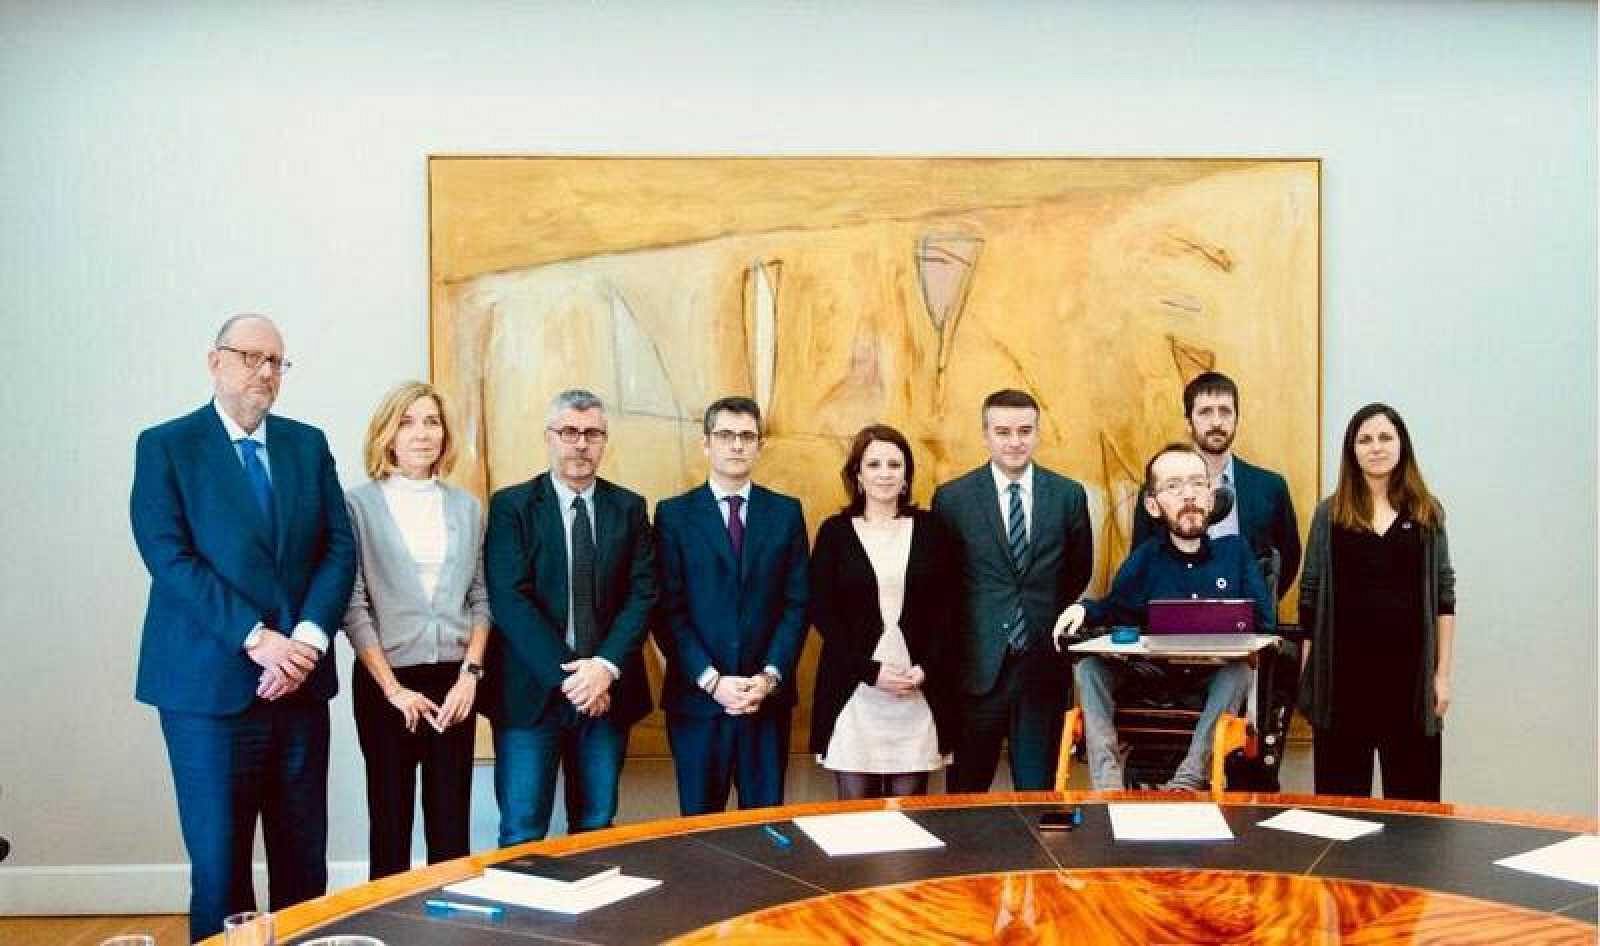 PSOE y Podemos reúnen a la comisión de seguimiento para superar los roces tras los últimos desencuentros en el Gobierno de coalición